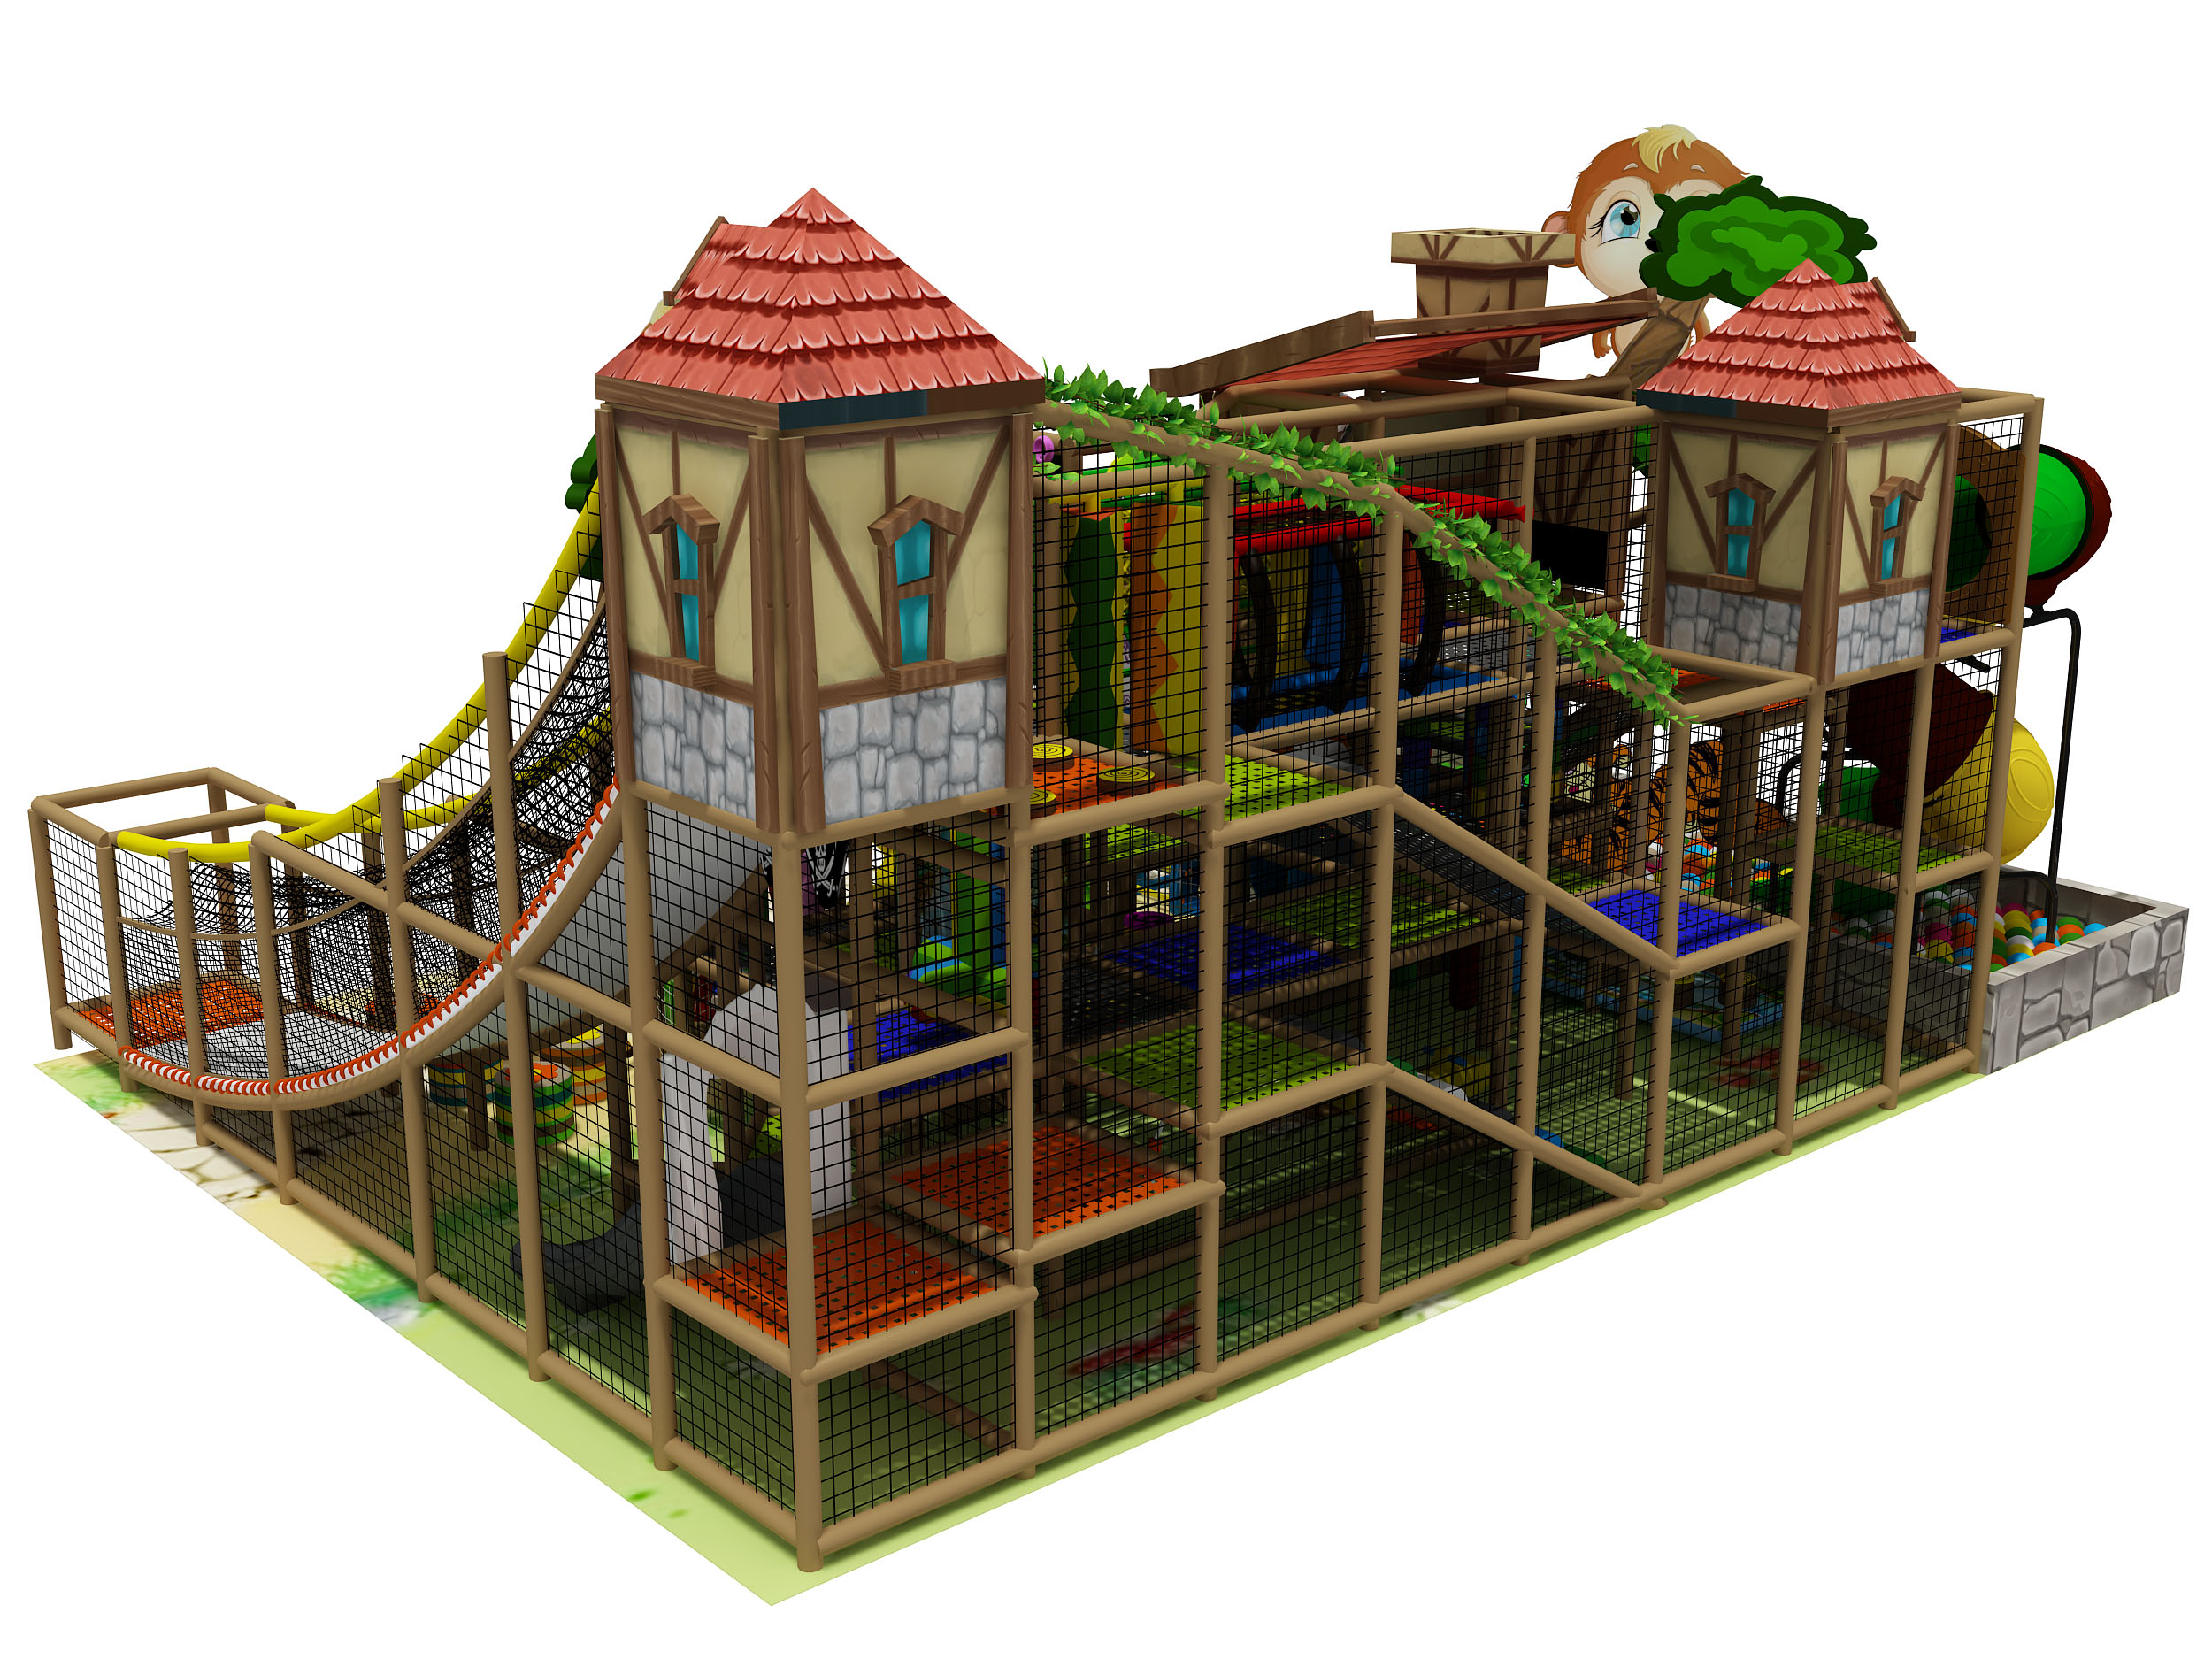 Centro di gioco indoor per bambini a tema della giungla